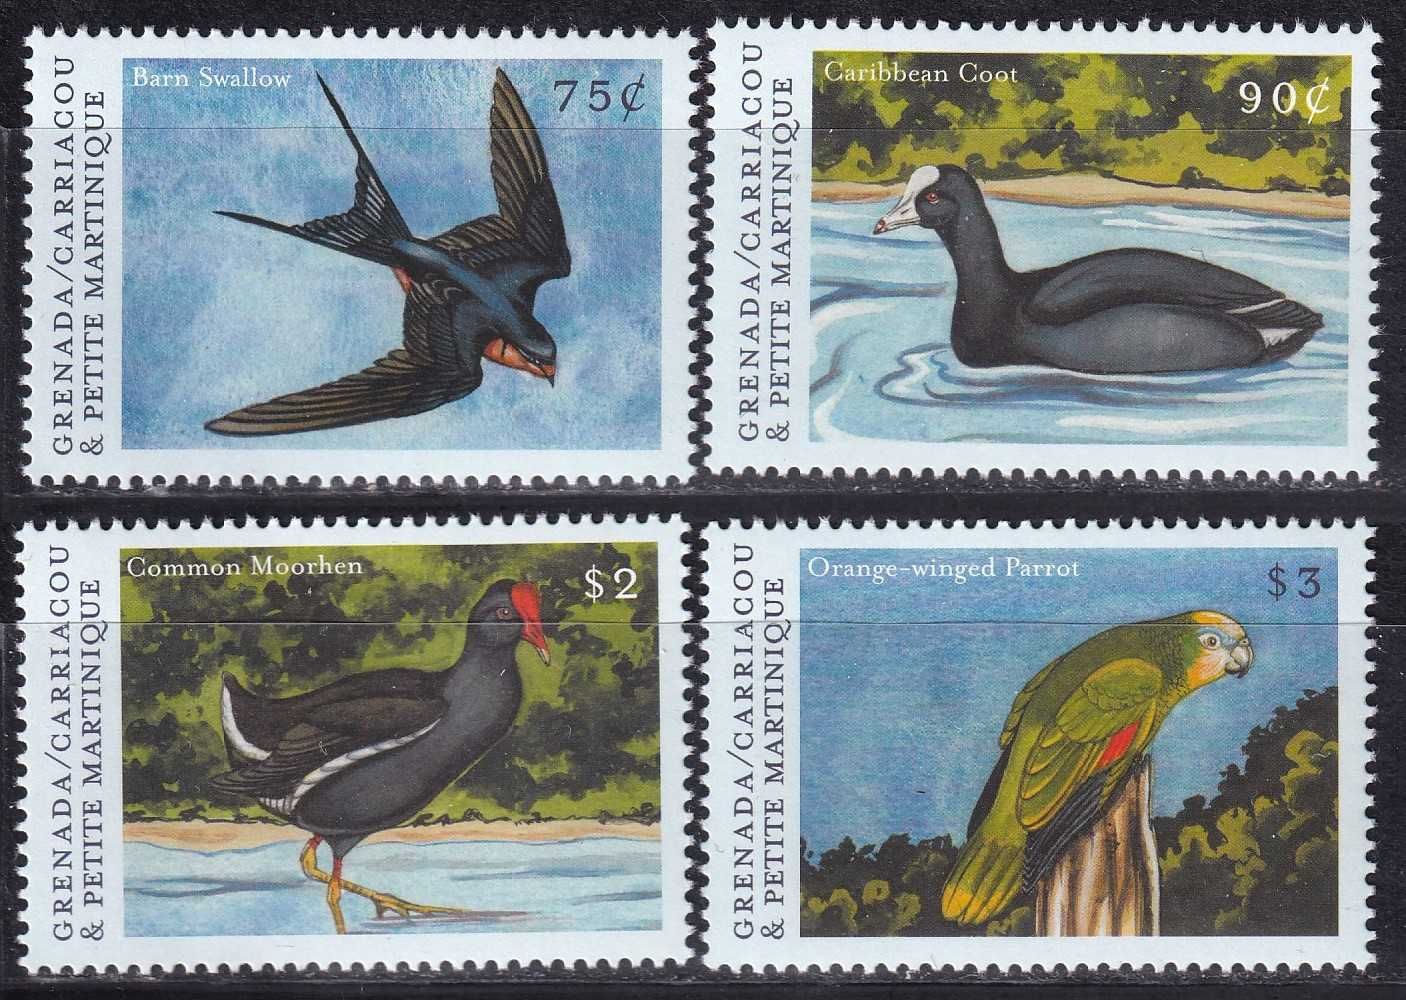 znaczki pocztowe - Grenada 2000 cena 7,80 zł kat.5,25€ - ptaki